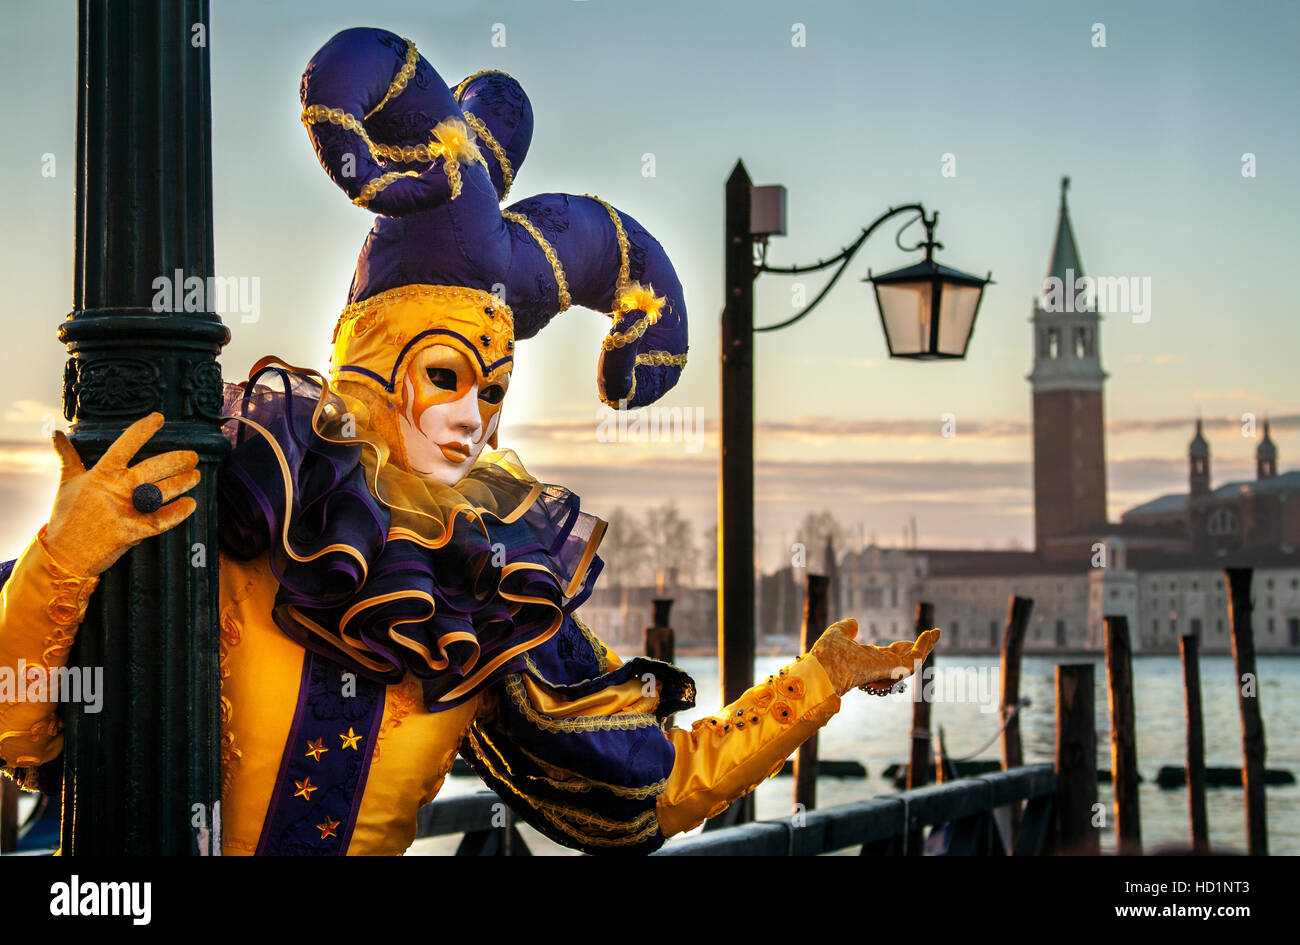 Venice, Italy - 23 February 2014 : Carnival in Venice, Italy. Stock Photo